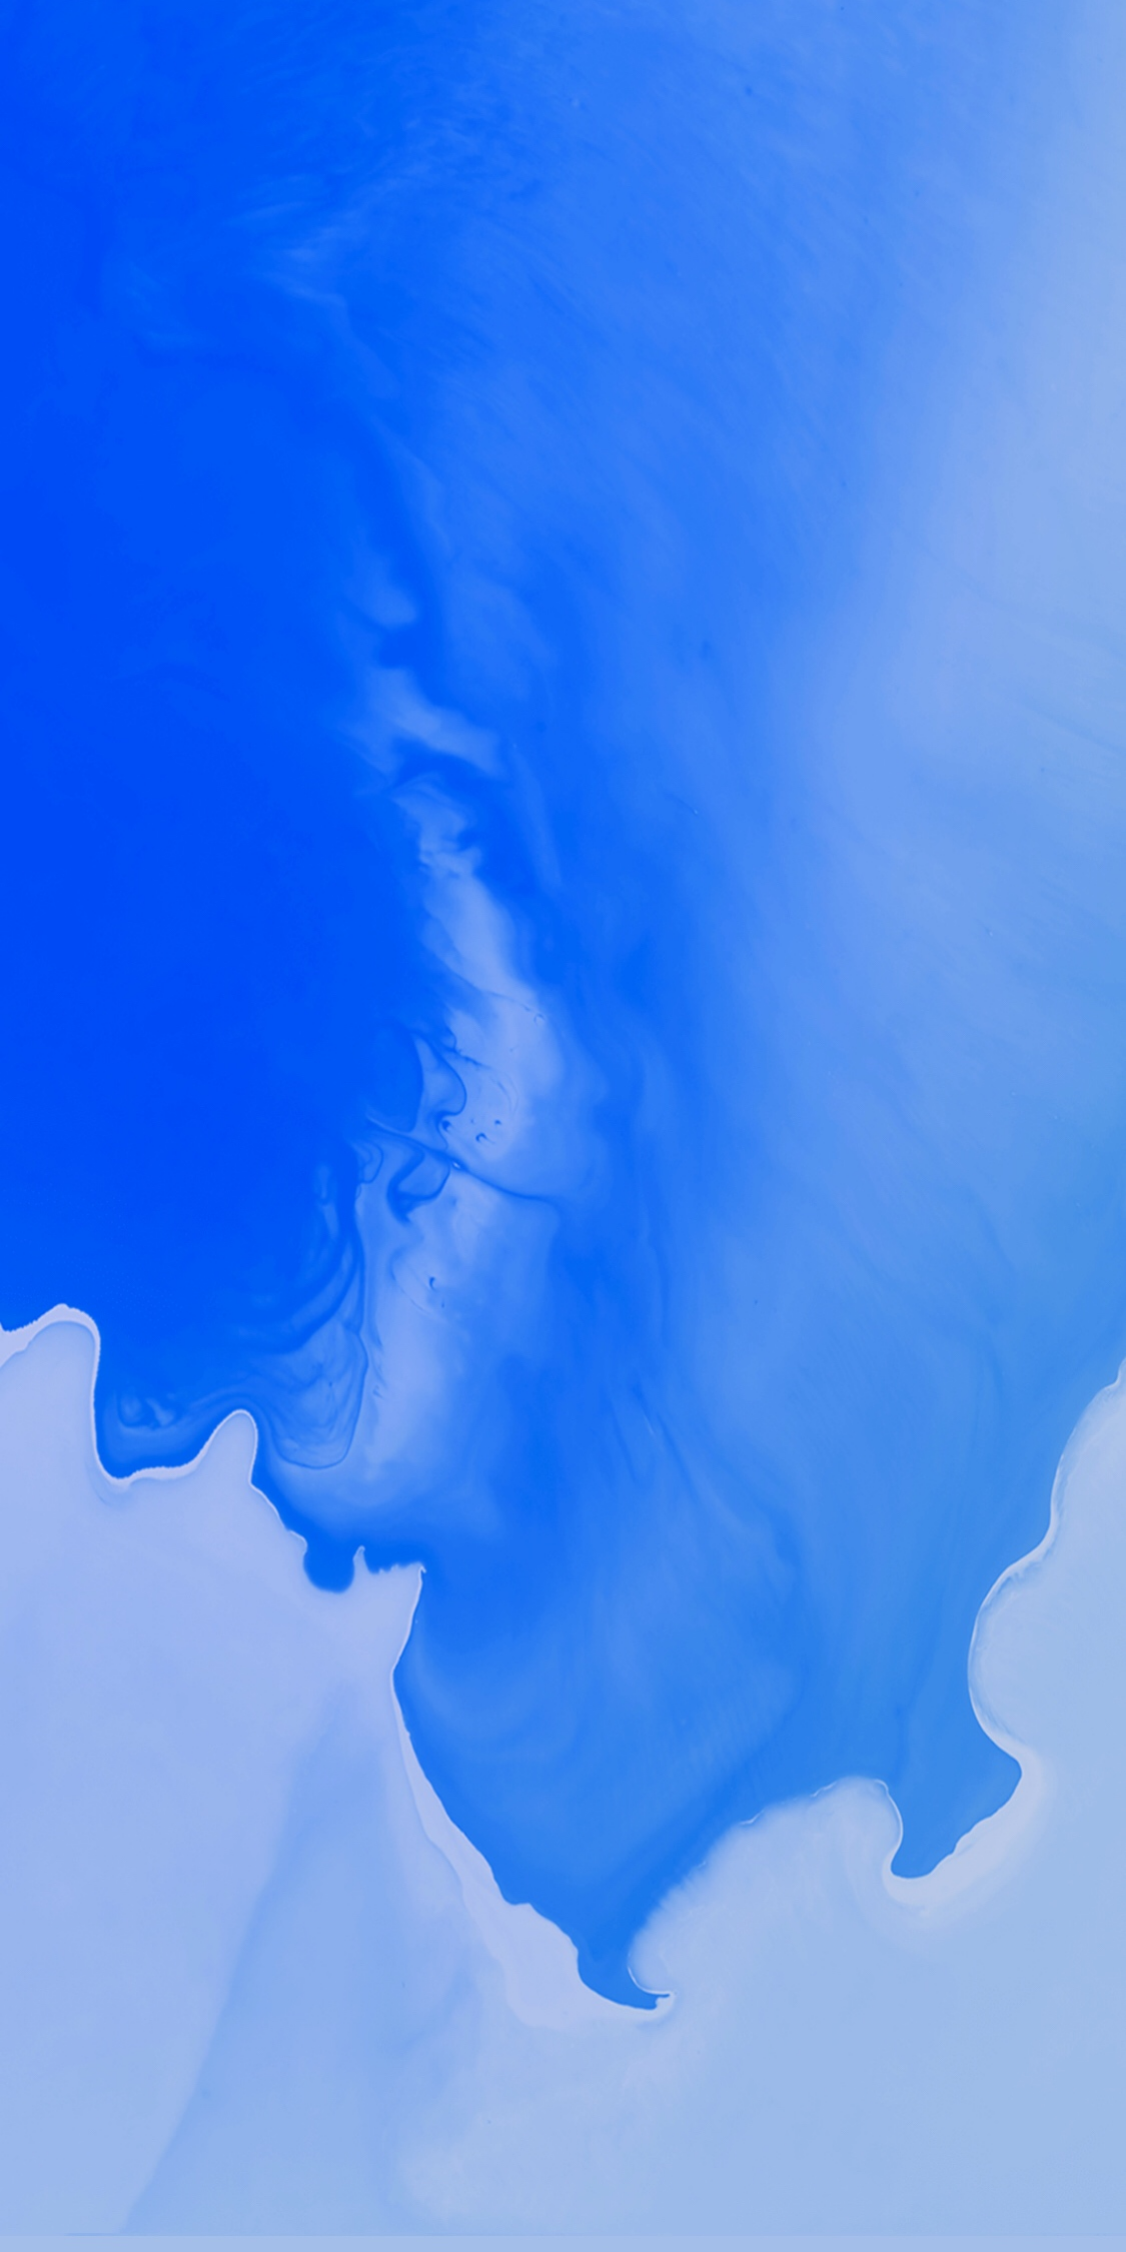 android standard wallpaper,blau,himmel,wolke,kobaltblau,elektrisches blau